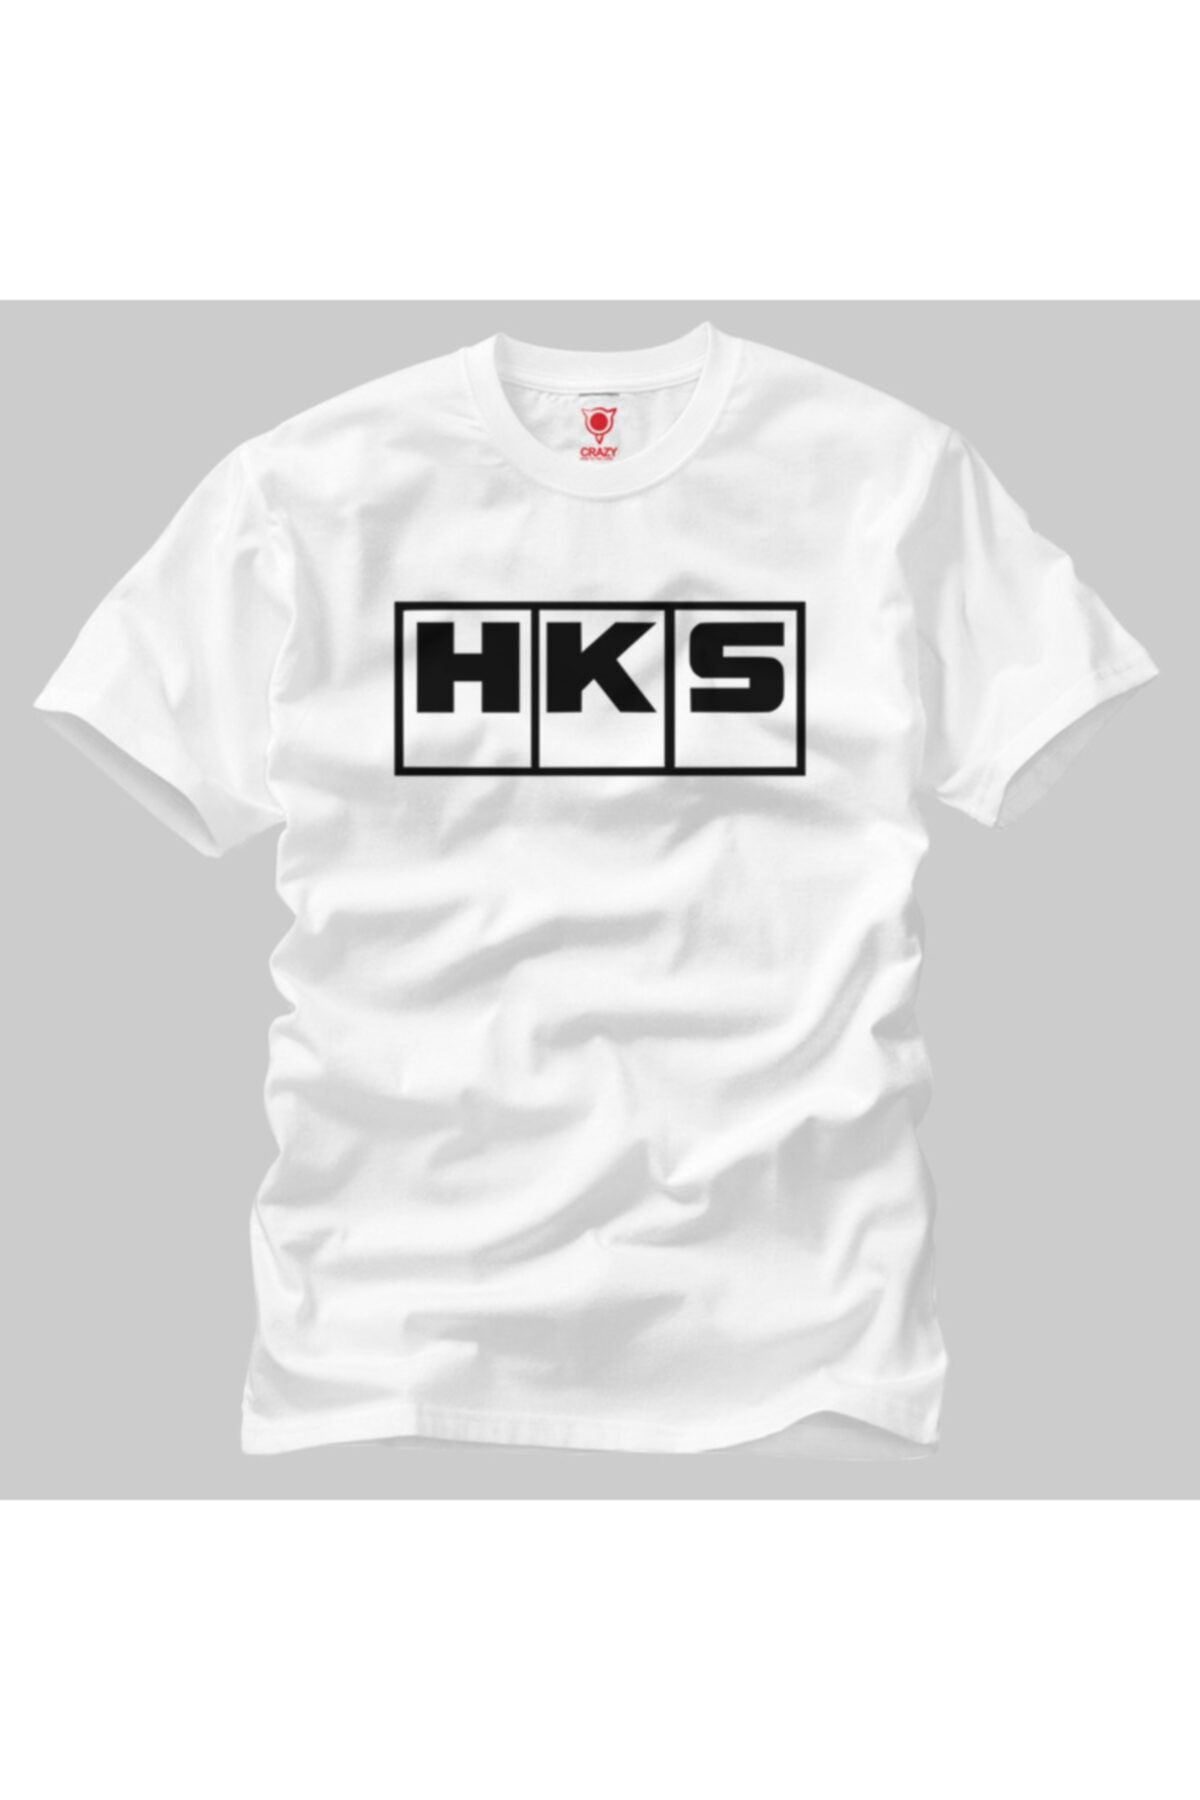 Crazy Hks Logo Erkek Tişört